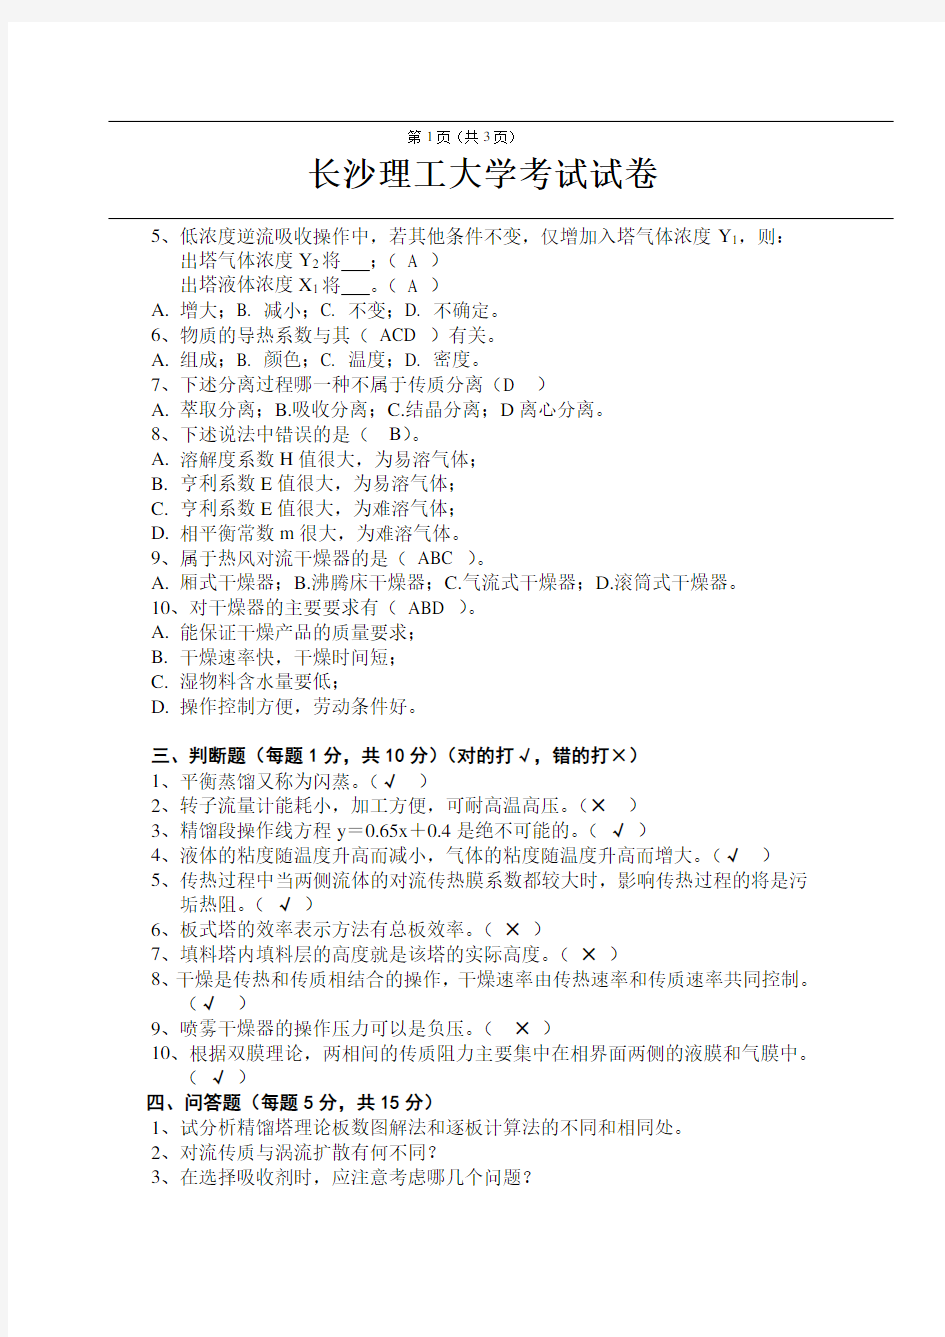 长沙理工大学考试试卷(下册3)